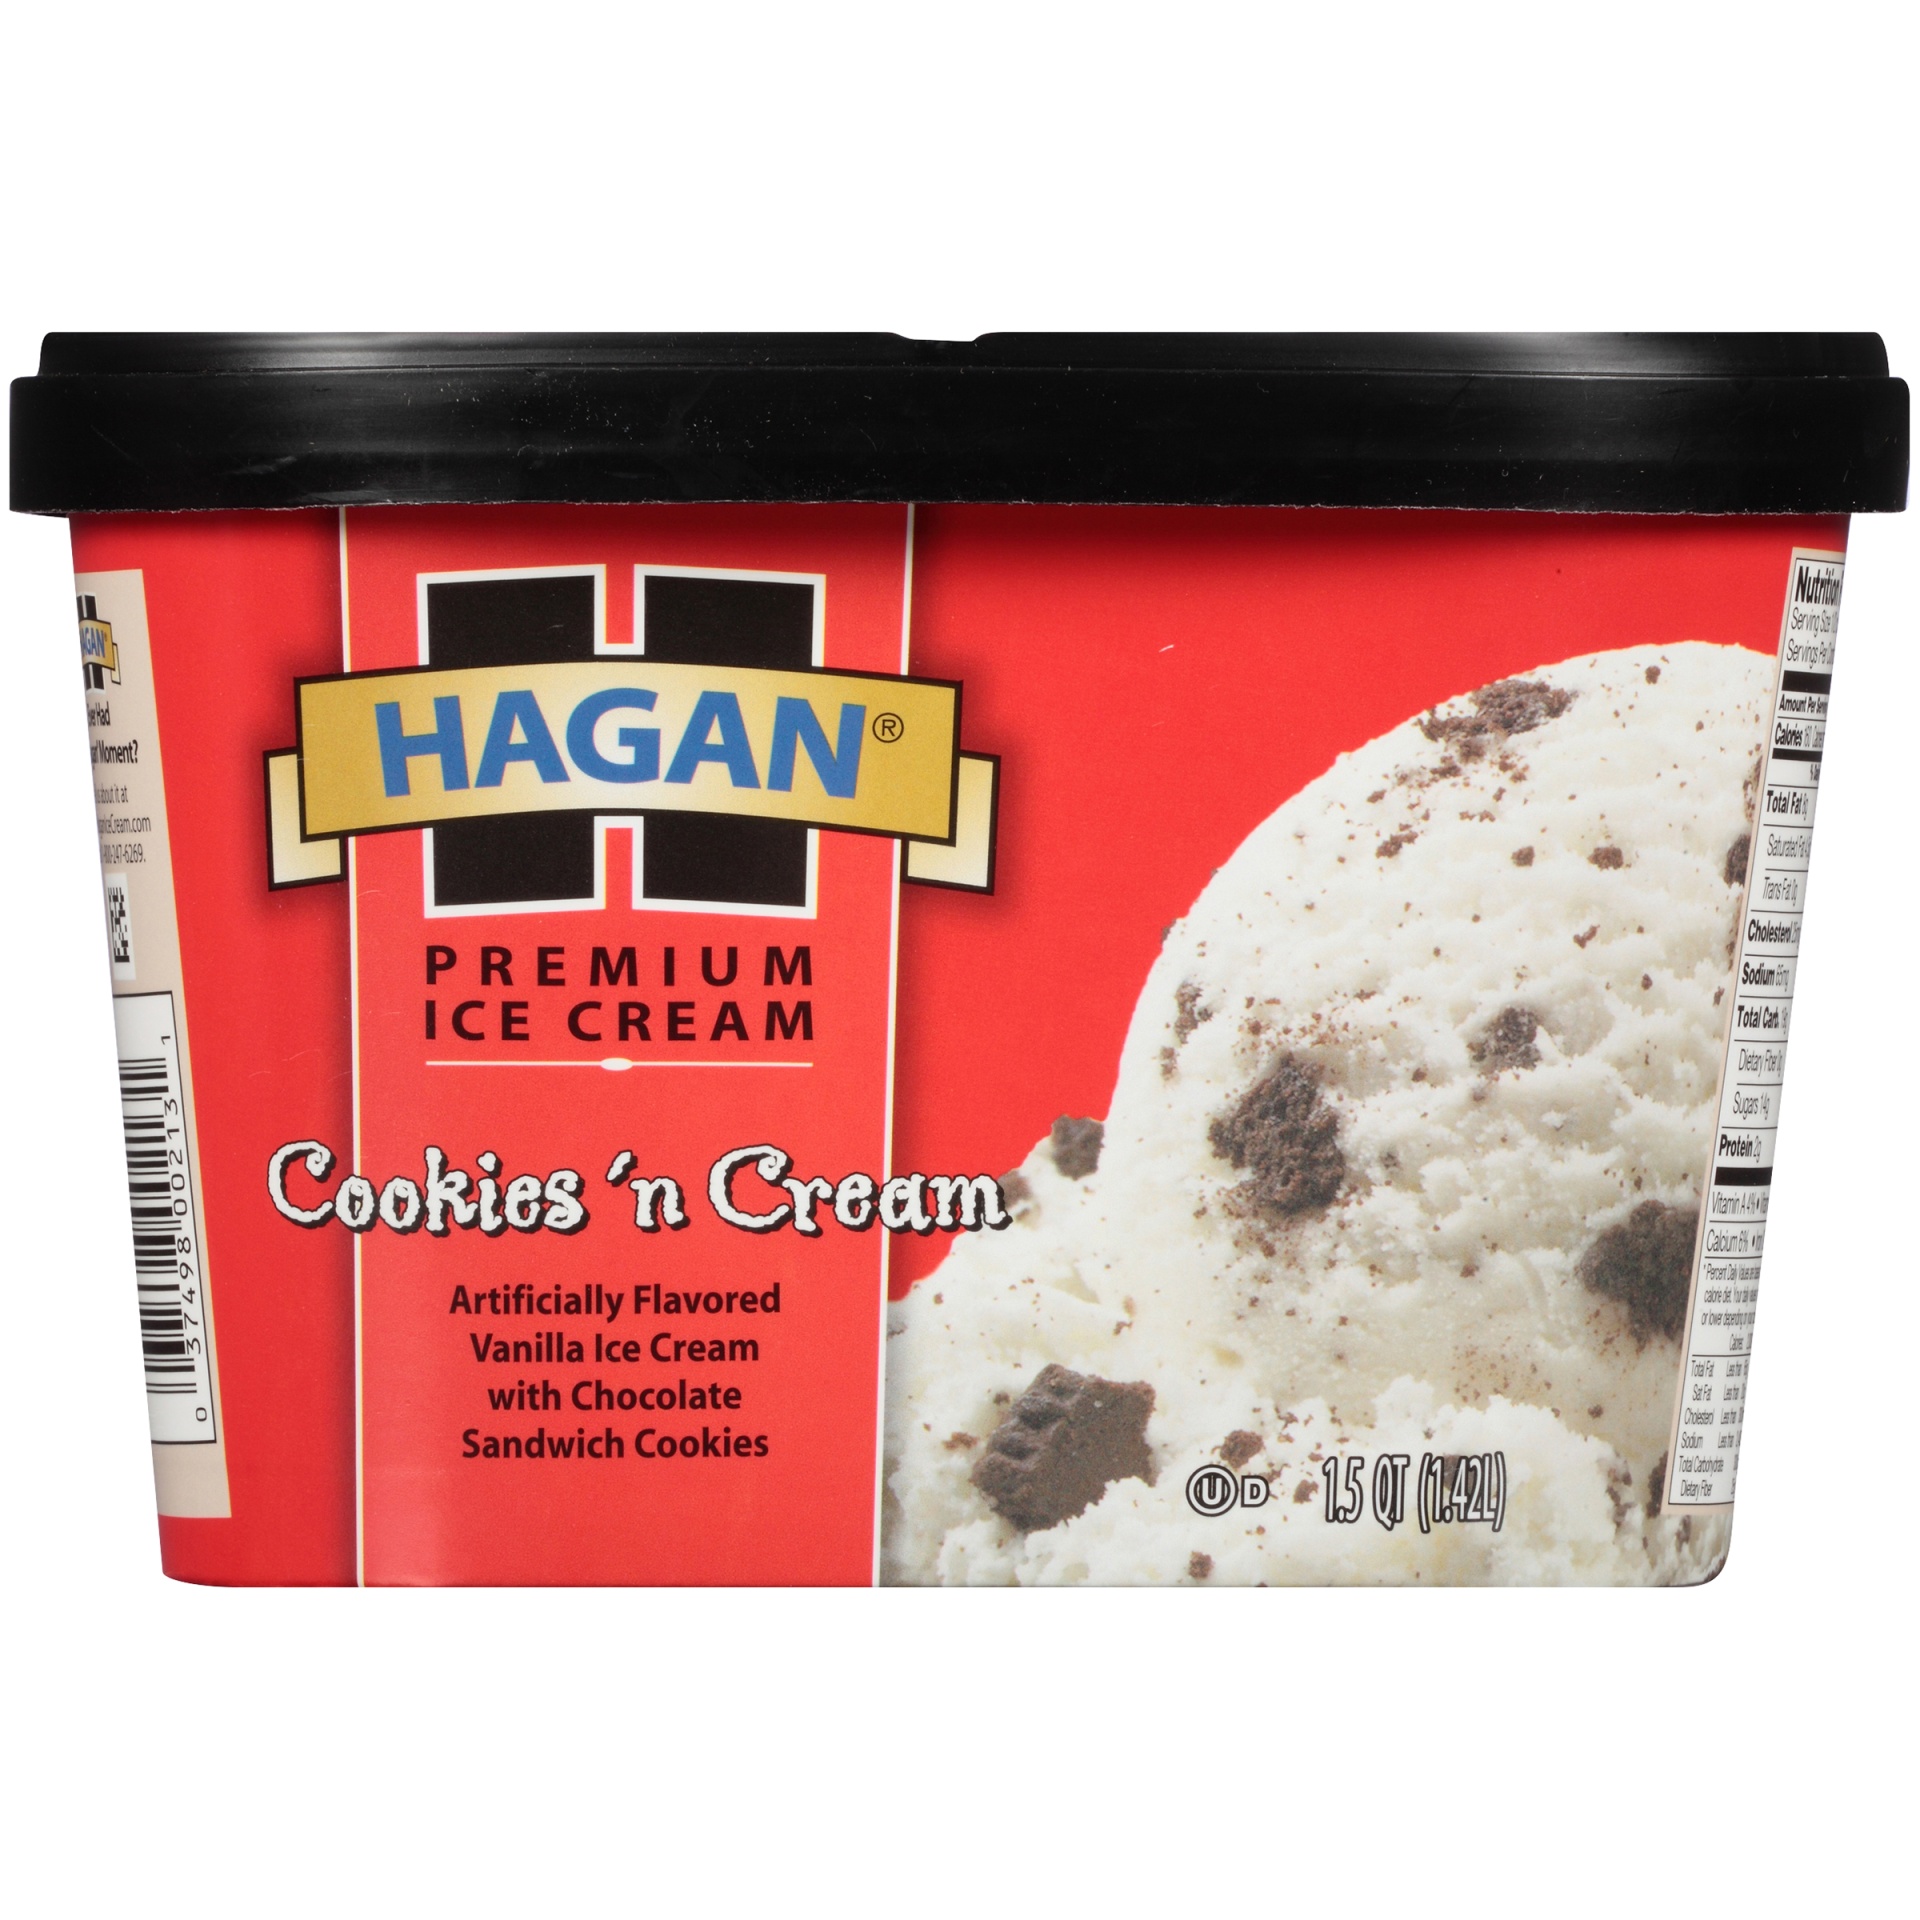 slide 4 of 7, Hagan Cookies 'n Cream Premium Ice Cream, 1.5 qt